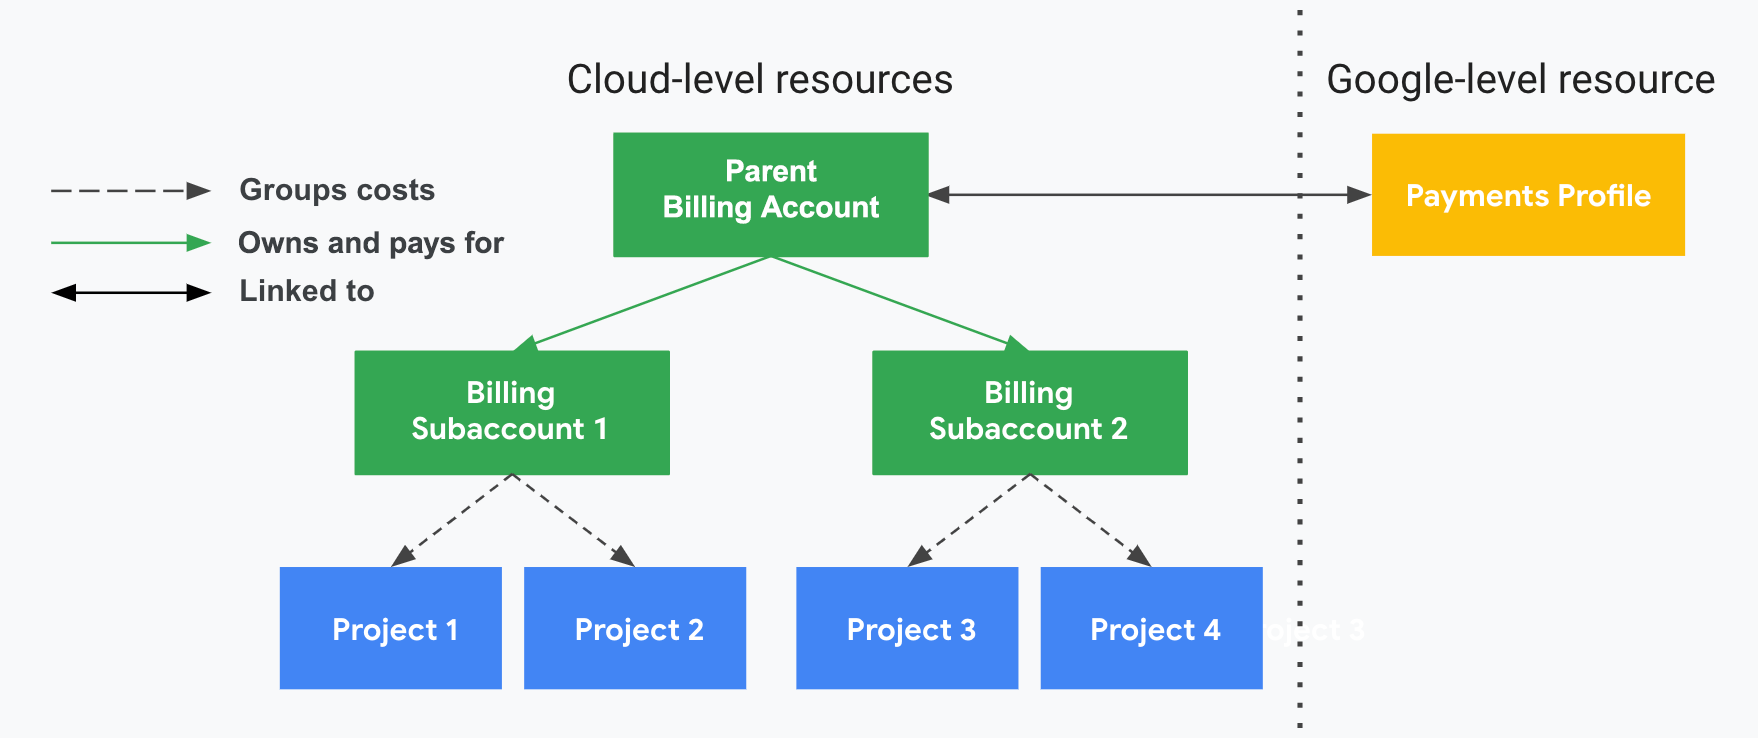 프로젝트가 Cloud Billing 계정, Cloud Billing 하위 계정, Google 결제 프로필과 어떻게 연결되는지를 보여줍니다. 한쪽은 Google Cloud 수준 리소스(Cloud Billing 계정과 관련 프로젝트)를 보여주고 세로 점선으로 구분된 다른 쪽은 Google 수준 리소스(Google 결제 프로필)를 보여줍니다. 프로젝트 사용량 비용은 연결된 Cloud Billing 하위 계정별로 그룹화하여 소계됩니다. 하위 계정은 Google 결제 프로필에 연결된 리셀러의 상위 Cloud Billing 계정에서 결제합니다.